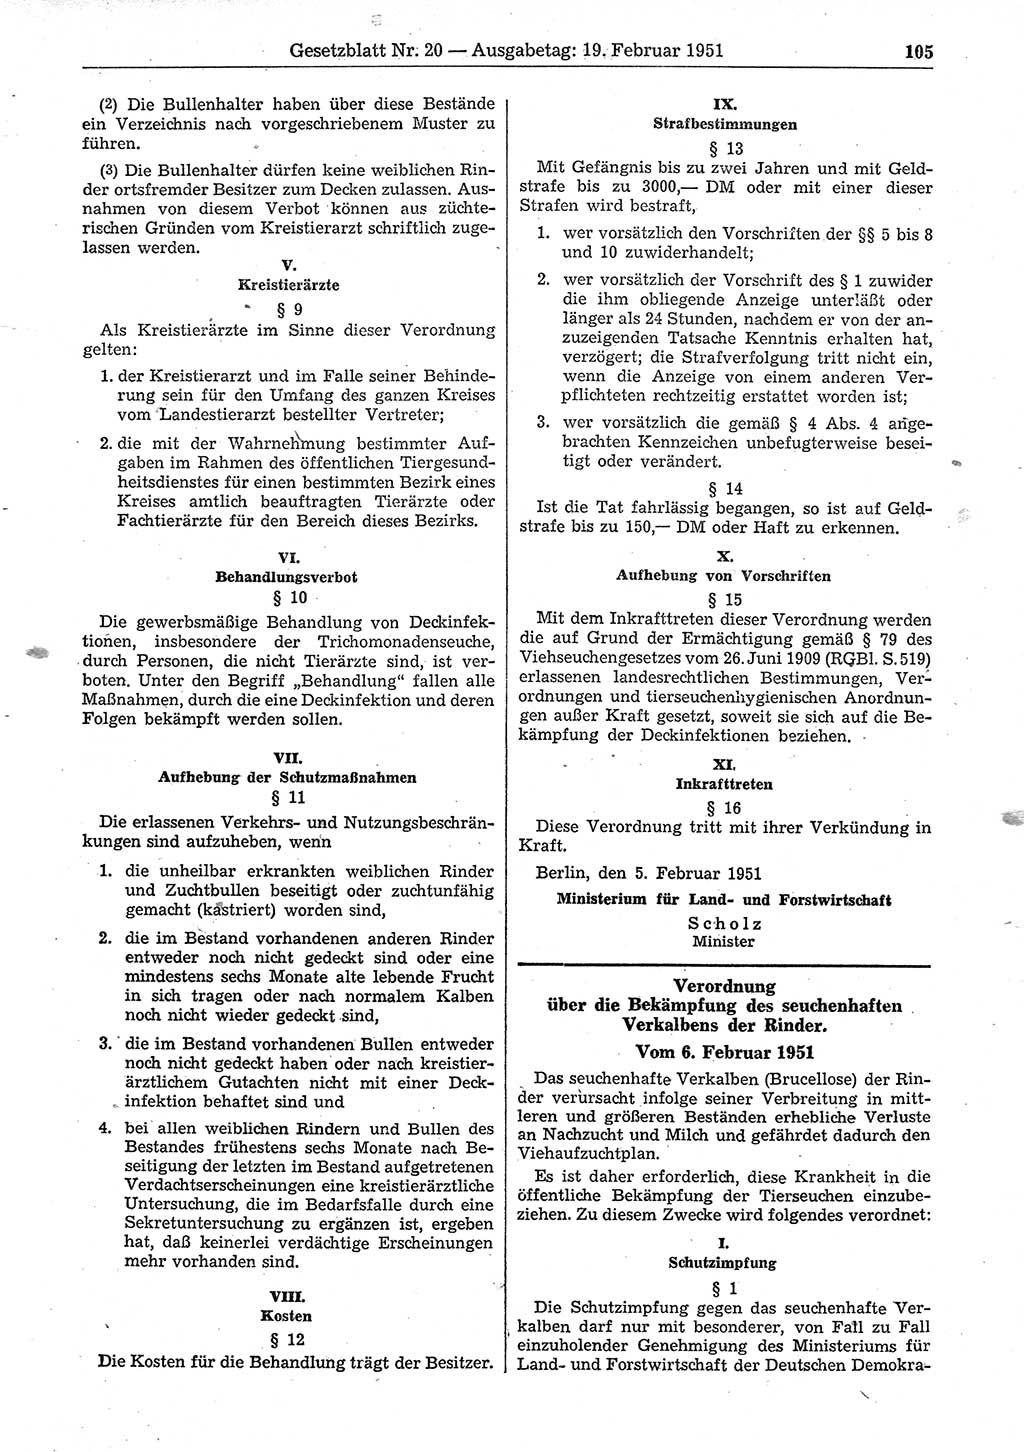 Gesetzblatt (GBl.) der Deutschen Demokratischen Republik (DDR) 1951, Seite 105 (GBl. DDR 1951, S. 105)